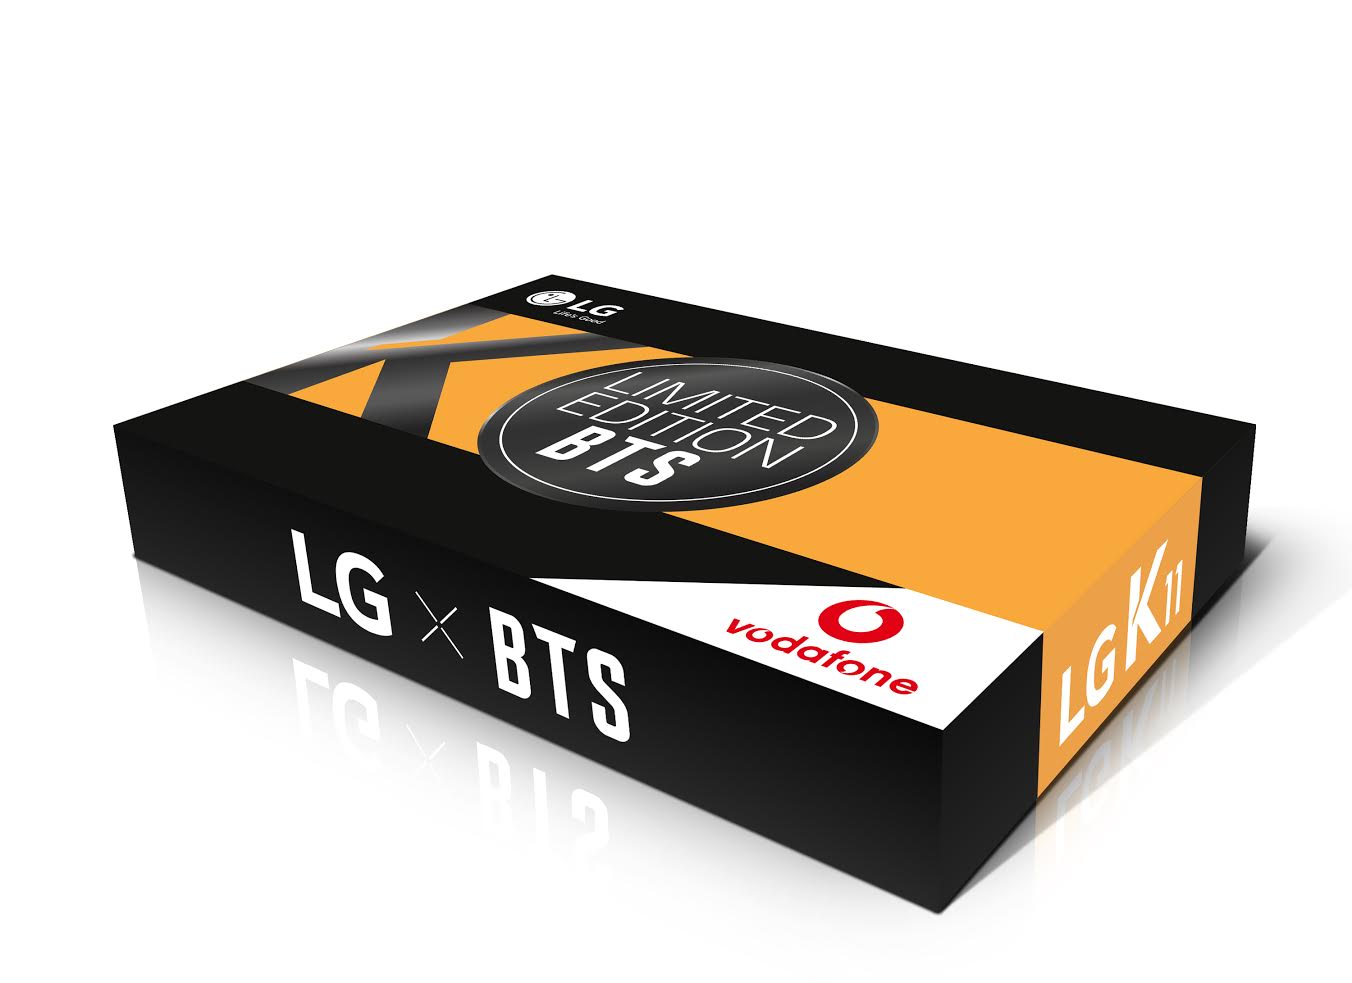 LG K11 con Vodafone, versión especial del móvil inspirada en el grupo BTS